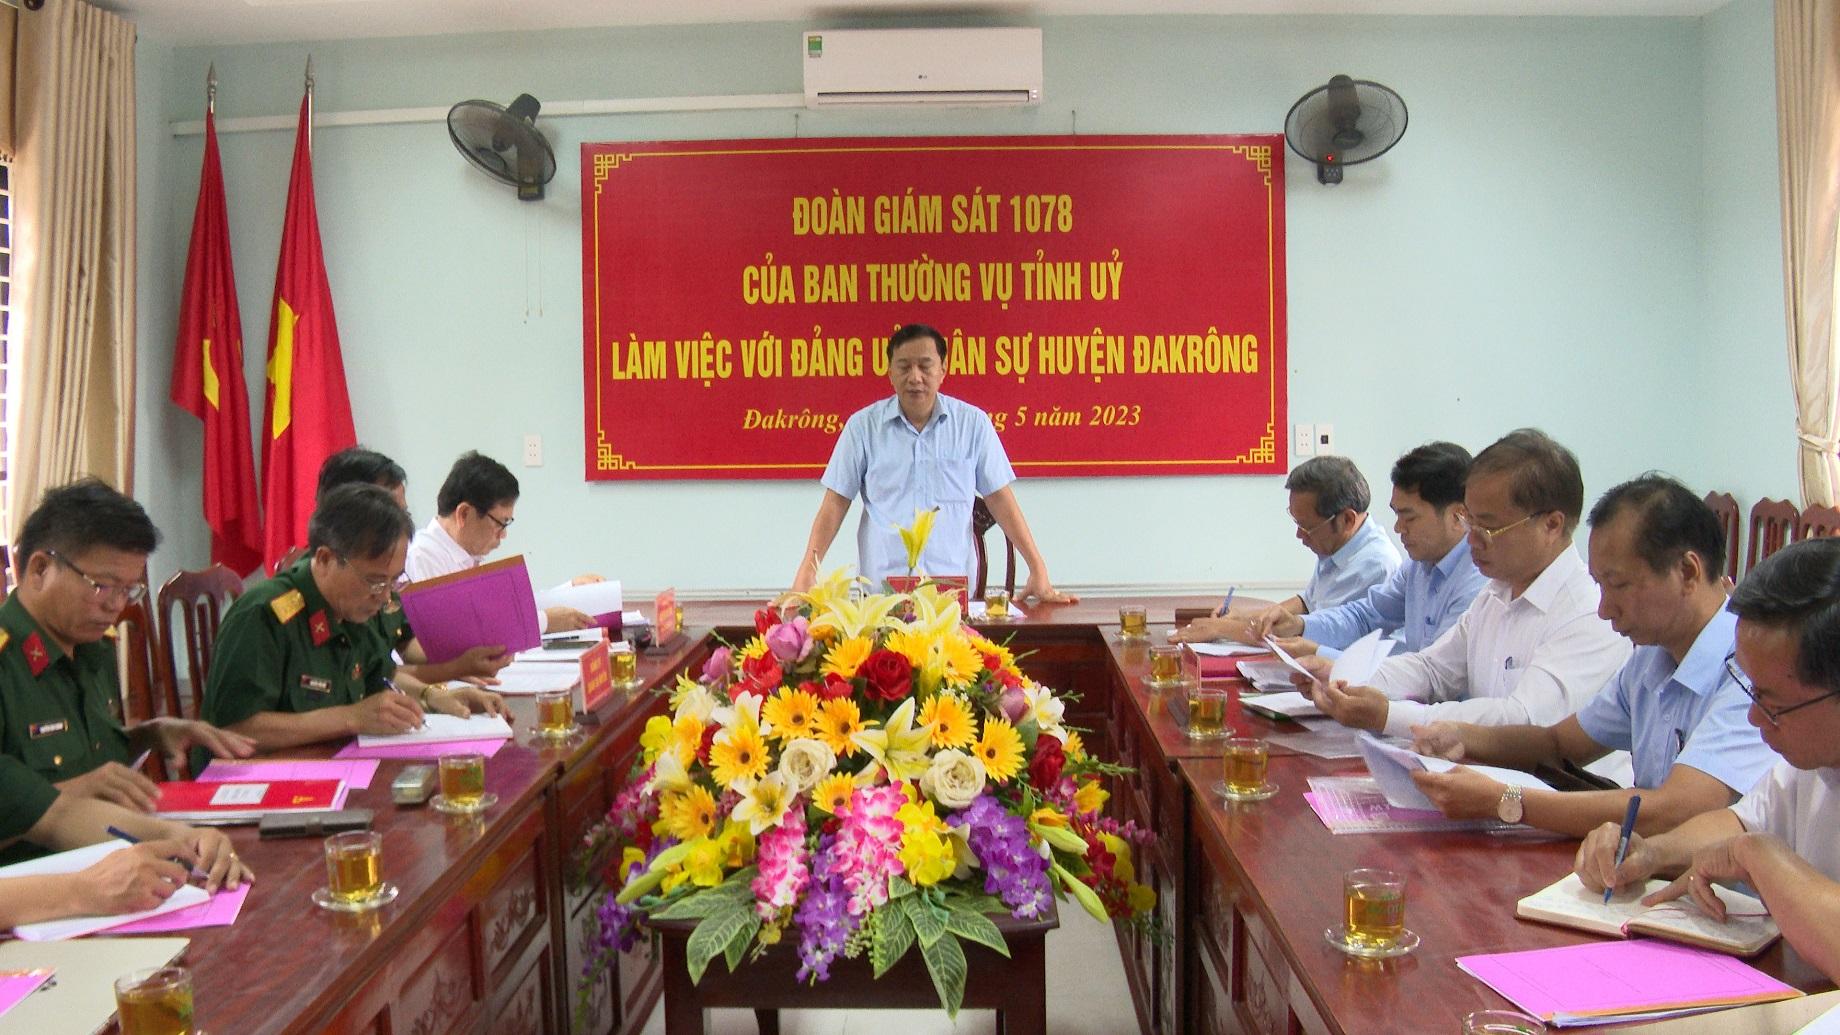 Huyện Đakrông chú trọng công tác kiểm tra, giám sát, thi hành kỷ luật Đảng